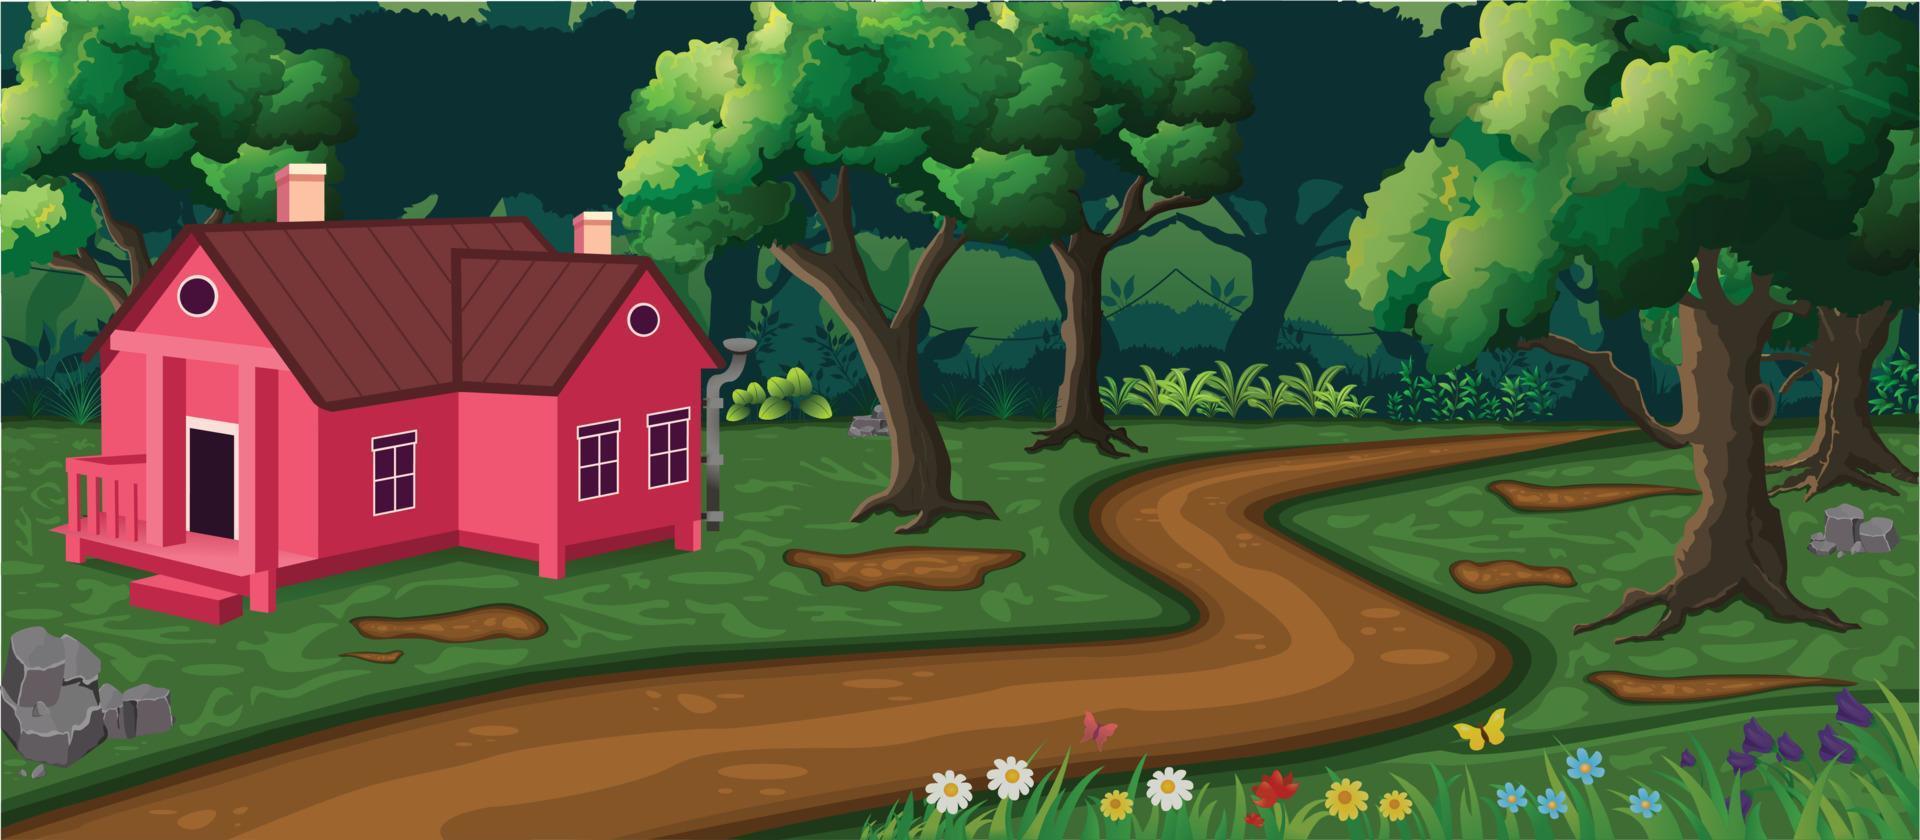 prachtig diep bos met één huis, wegen, bomen, bloemen en groen gras vector cartoon achtergrond.